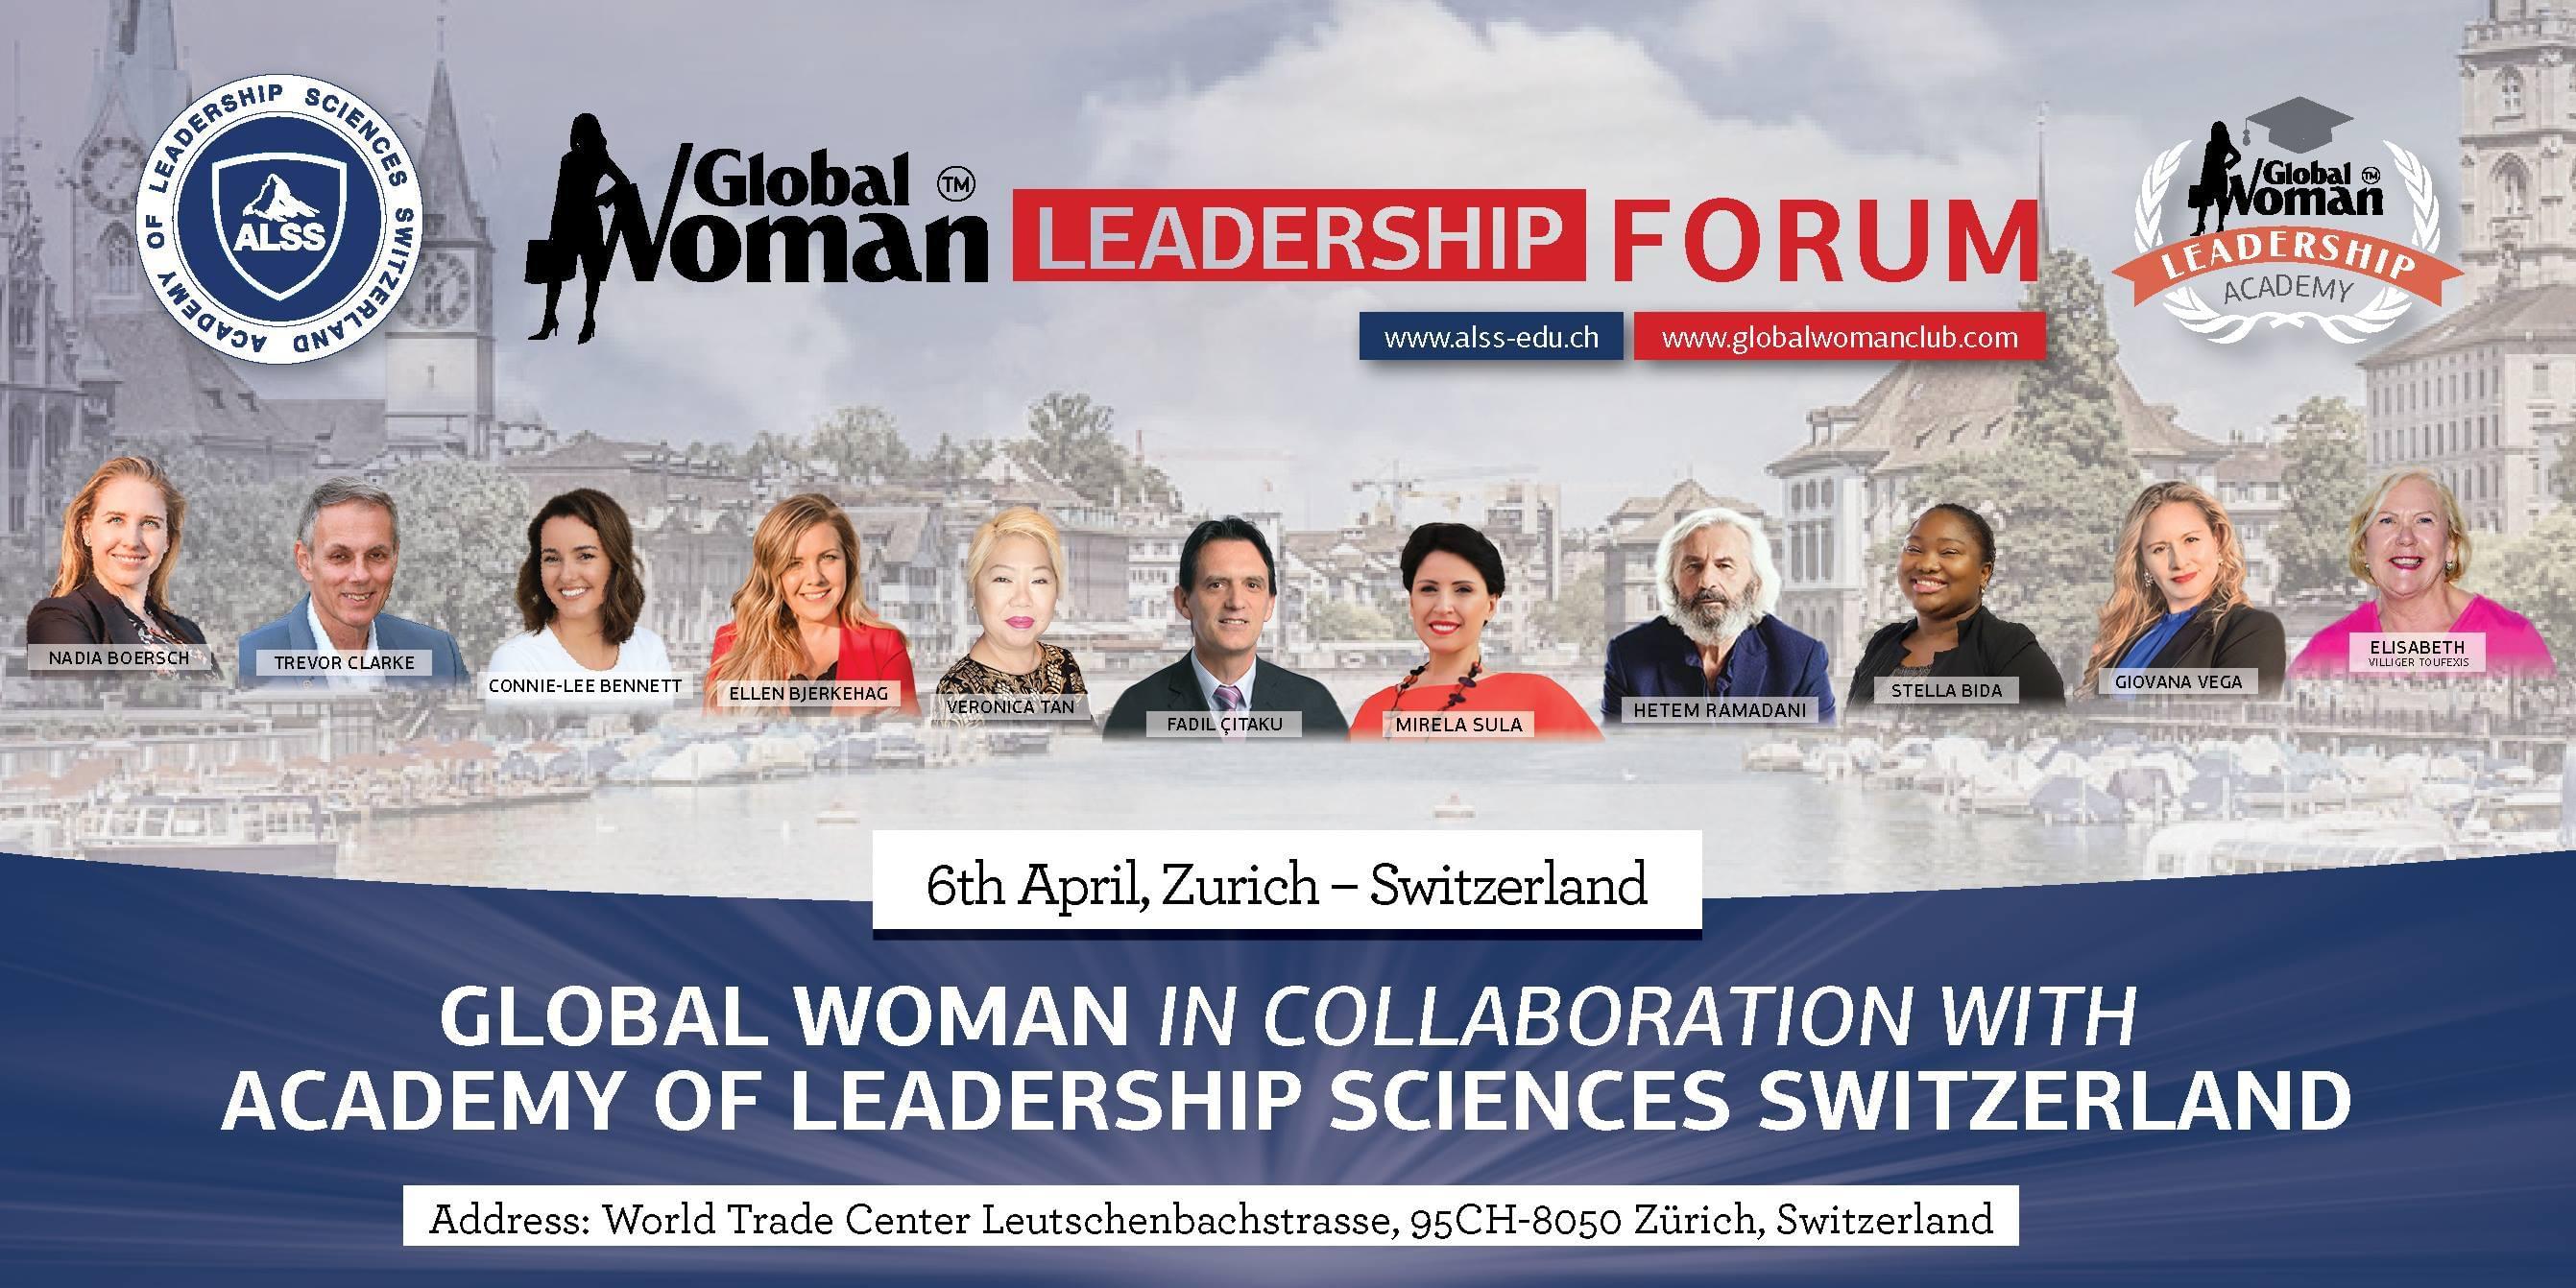 Global Woman Leadership Forum 2019 Zurich Switzerland, Zurich, Zürich, Switzerland